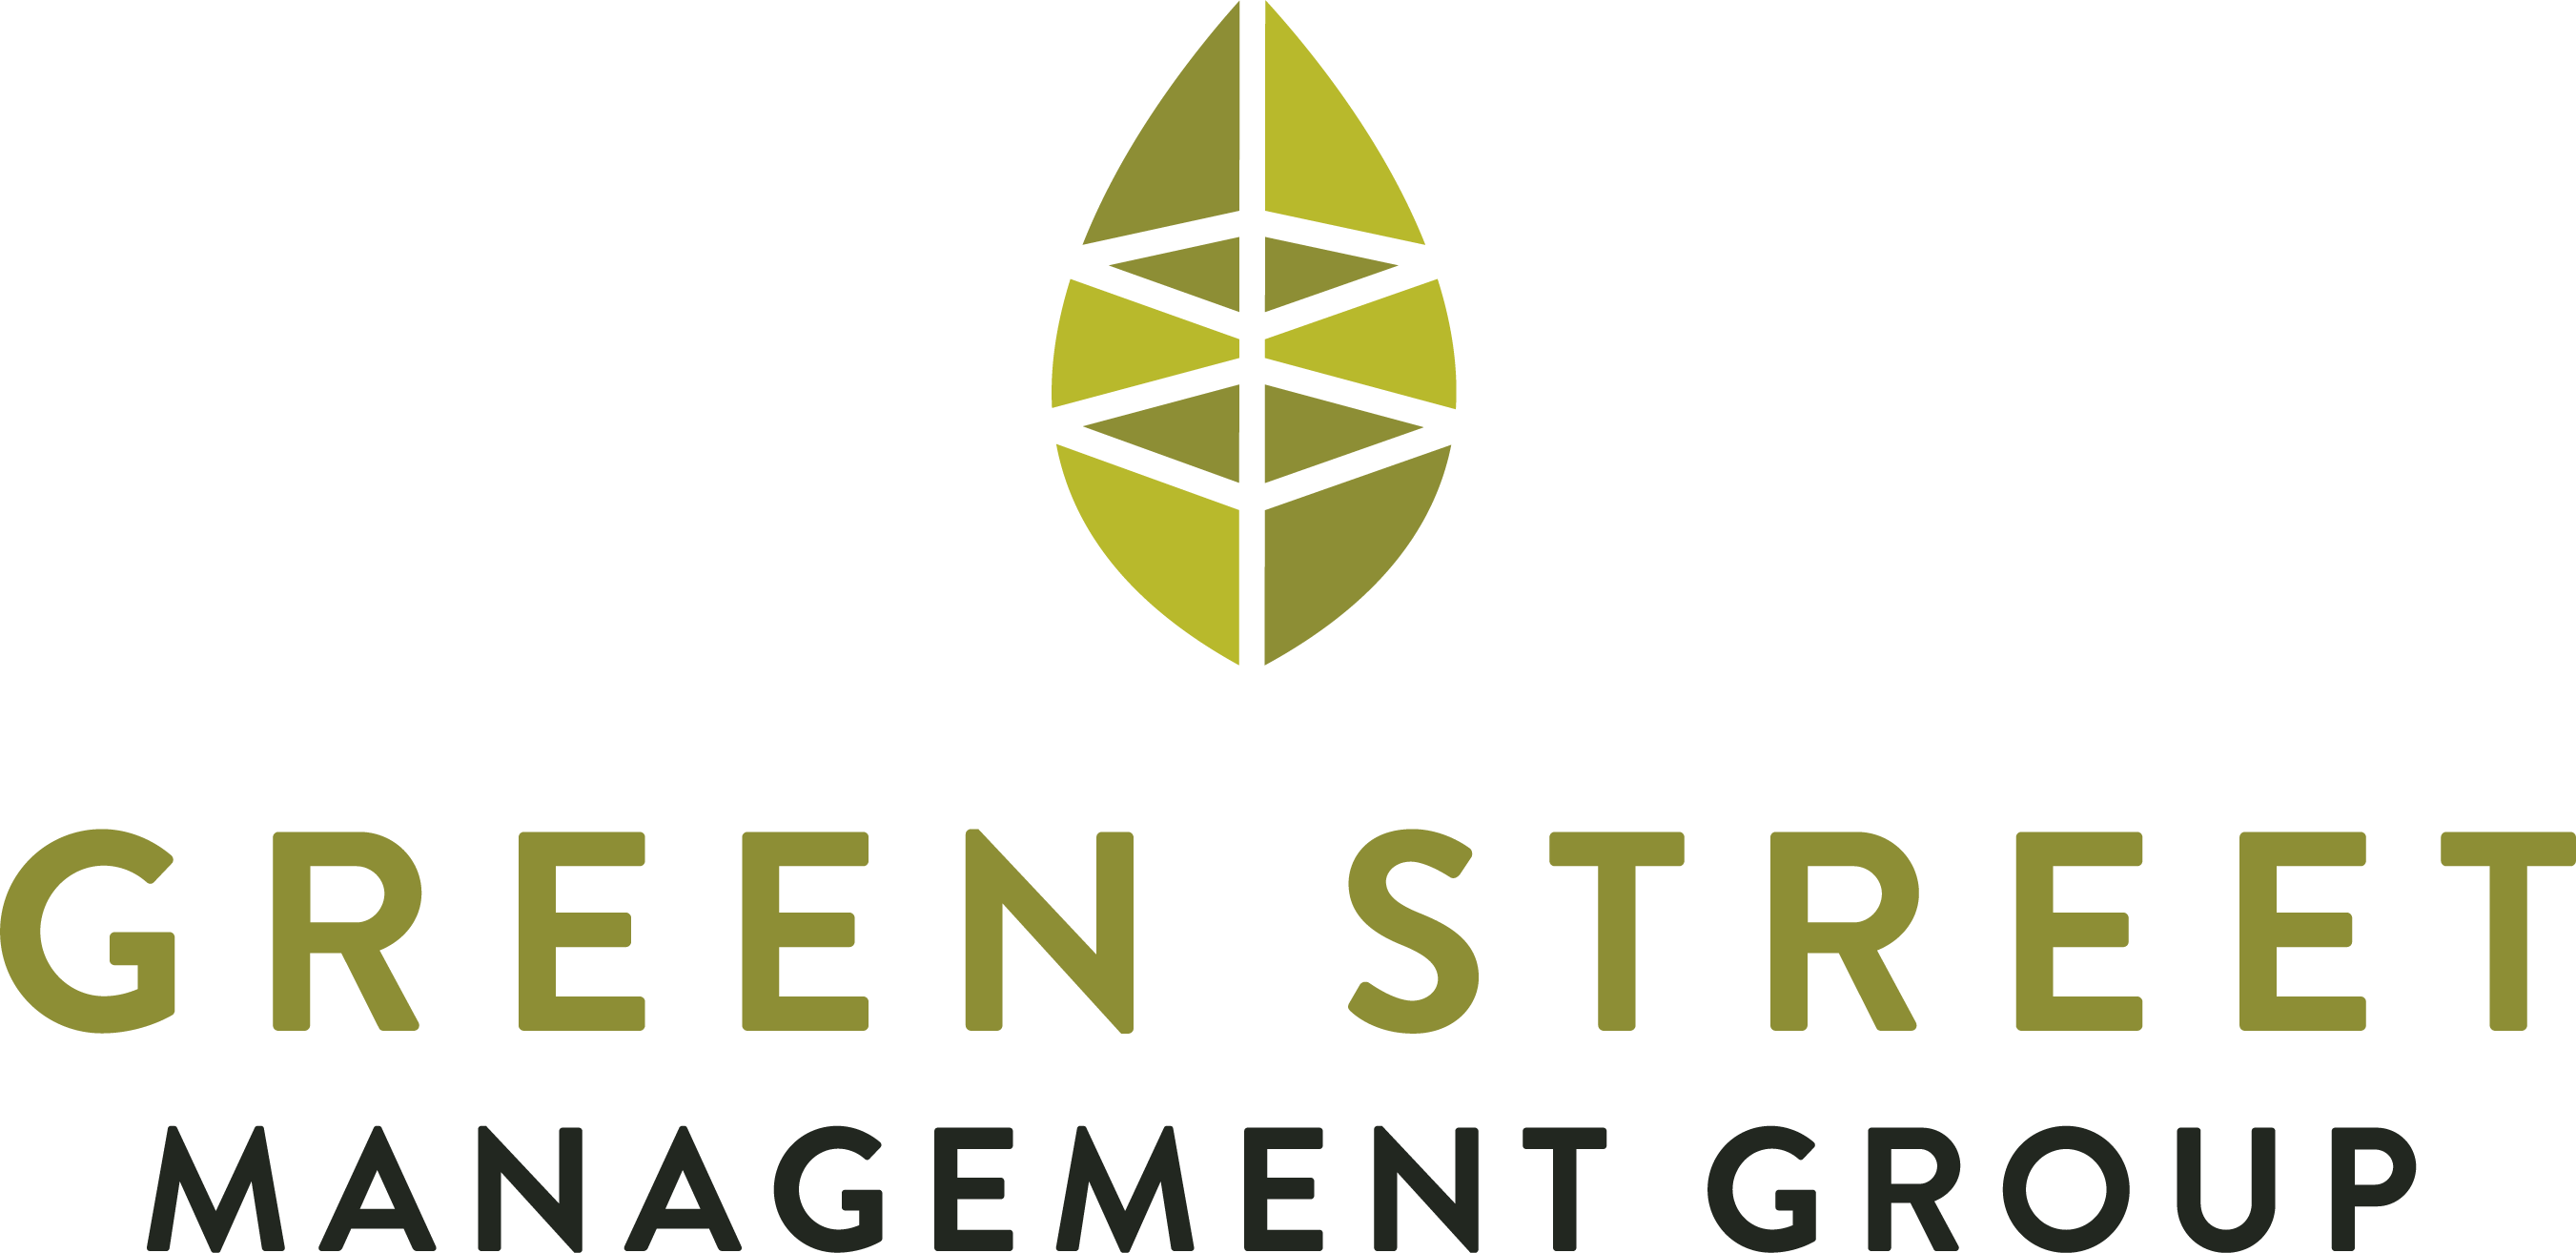 GreenStreetManagement_Vertical_CMYK